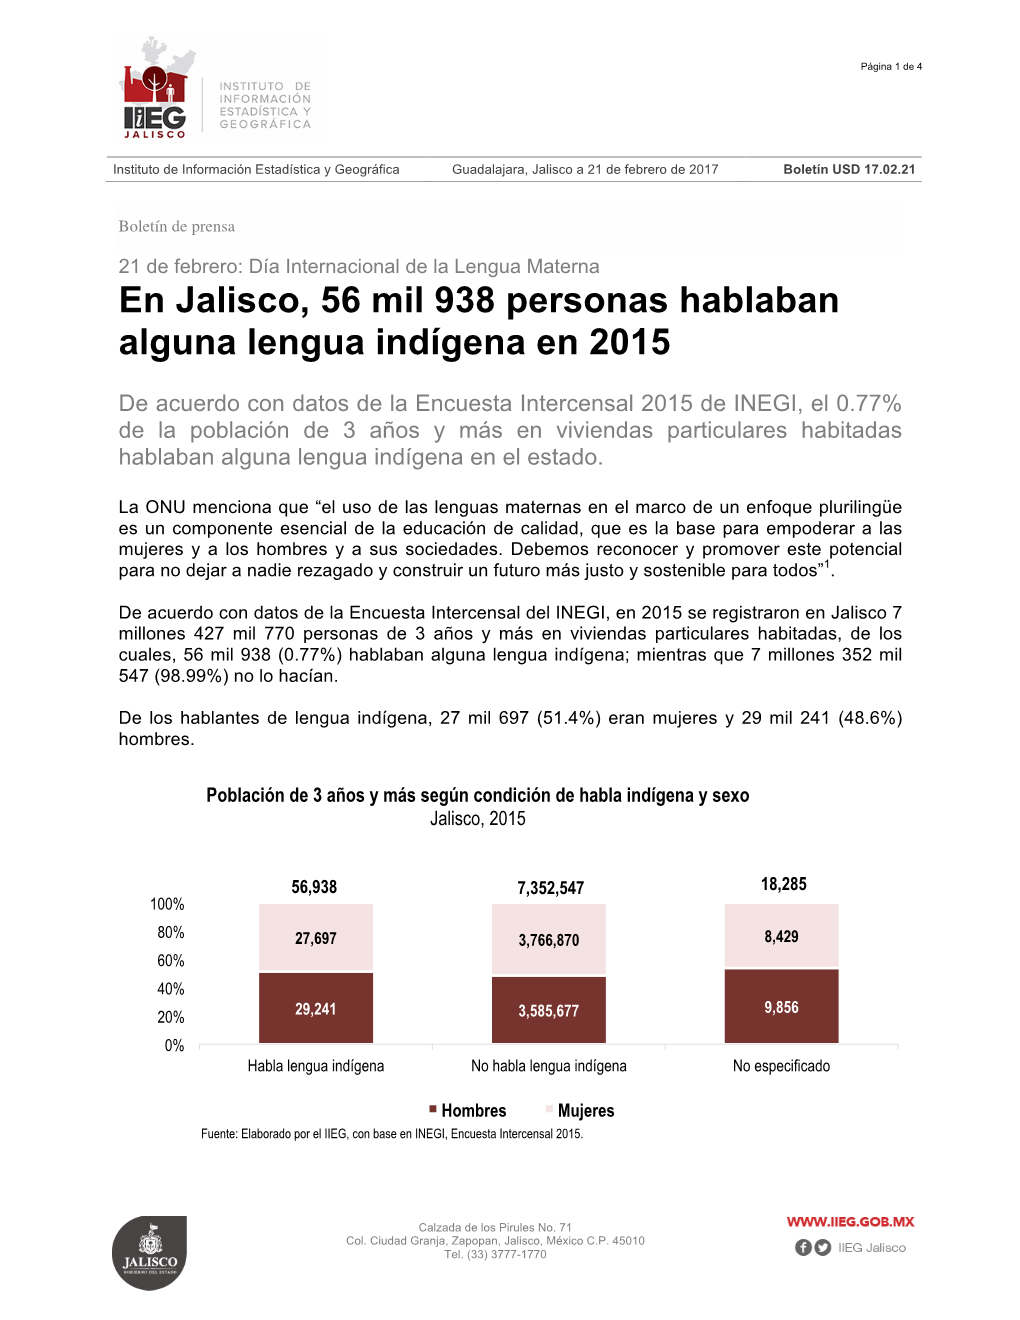 En Jalisco, 56 Mil 938 Personas Hablaban Alguna Lengua Indígena En 2015